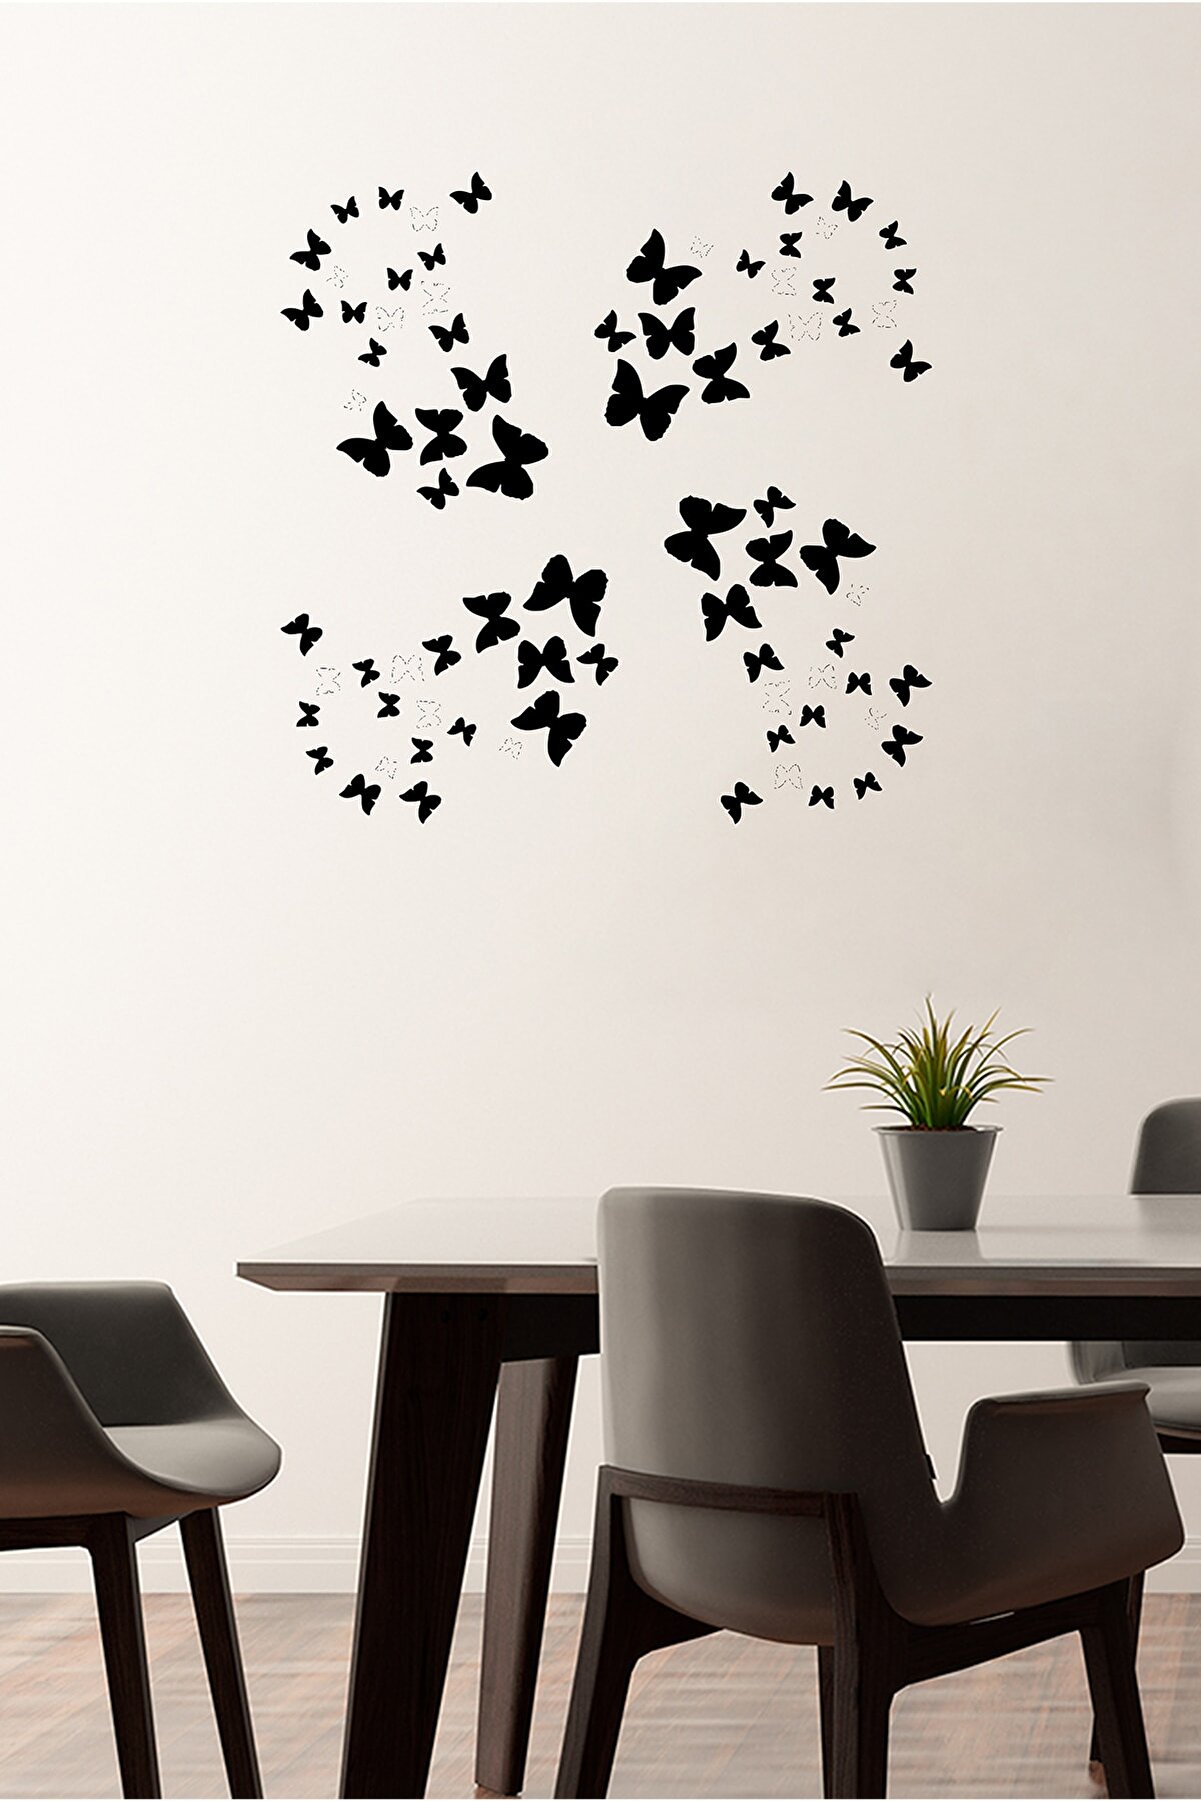 New Jargon Kelebek Şeklinde Oluşturulmuş Kelebekler 60x60 cm Duvar Sticker - Siyah